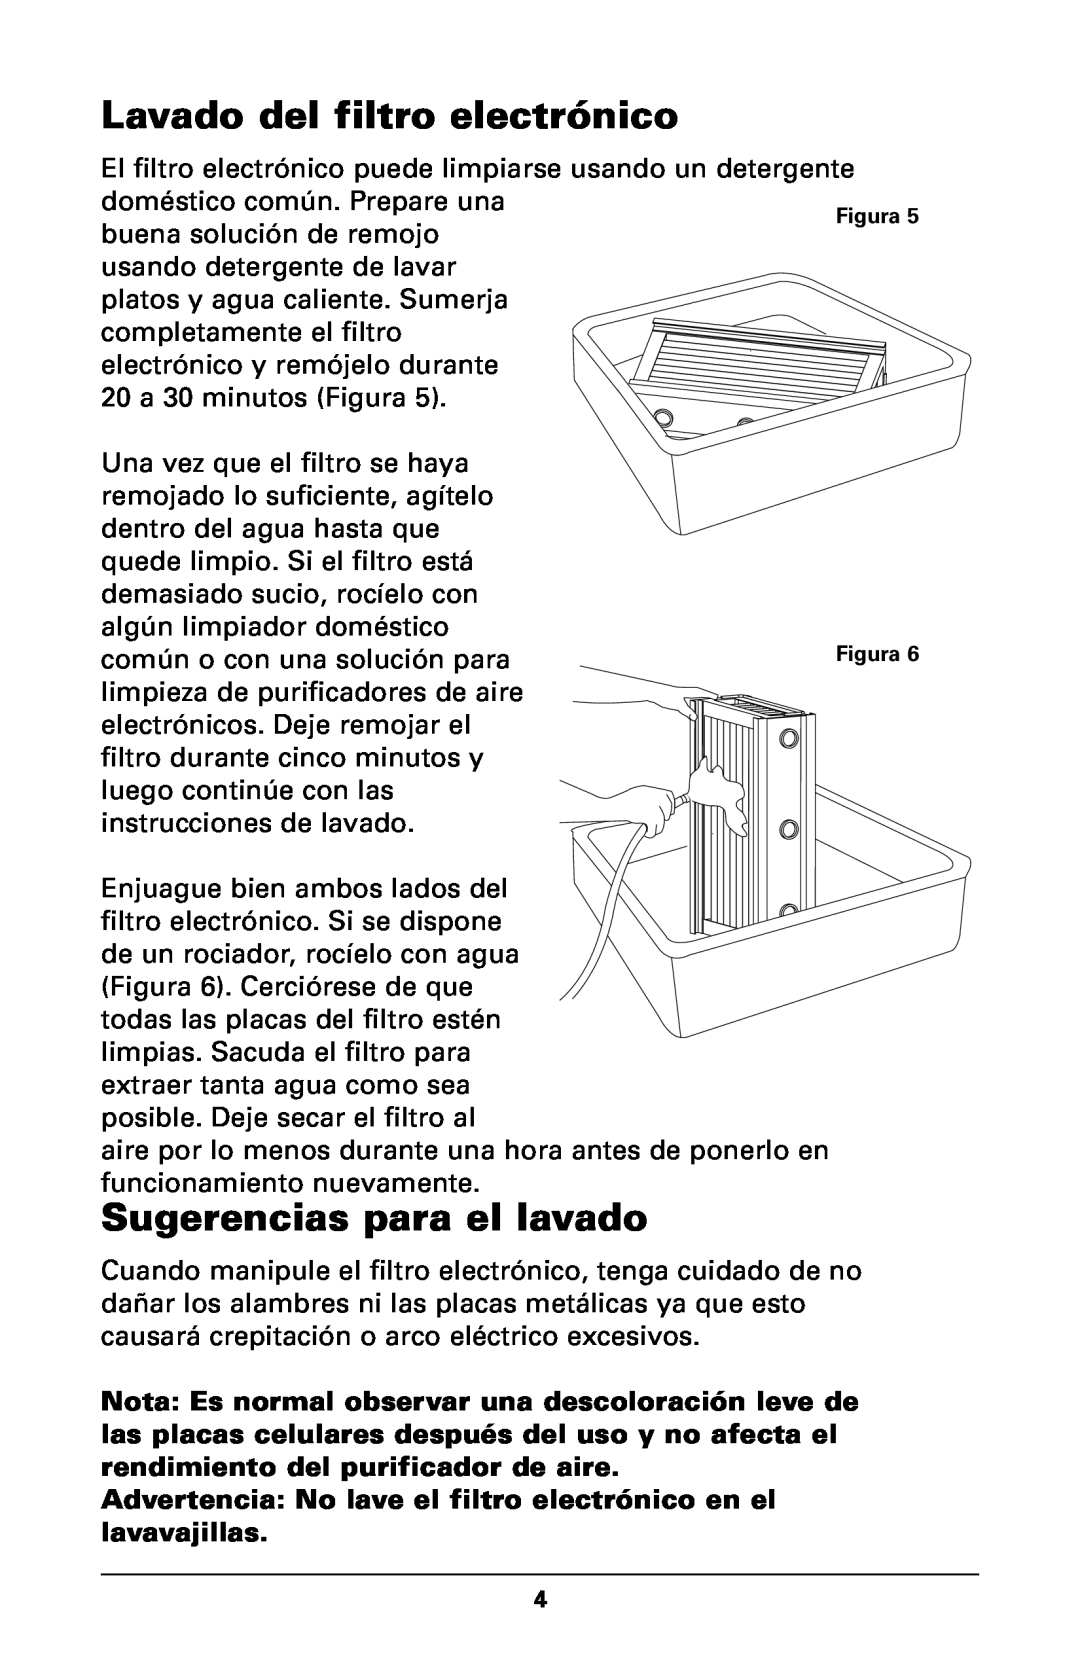 Trion High Efficiency Console Electronic Air Purifier manual Lavado del filtro electrónico, Sugerencias para el lavado 